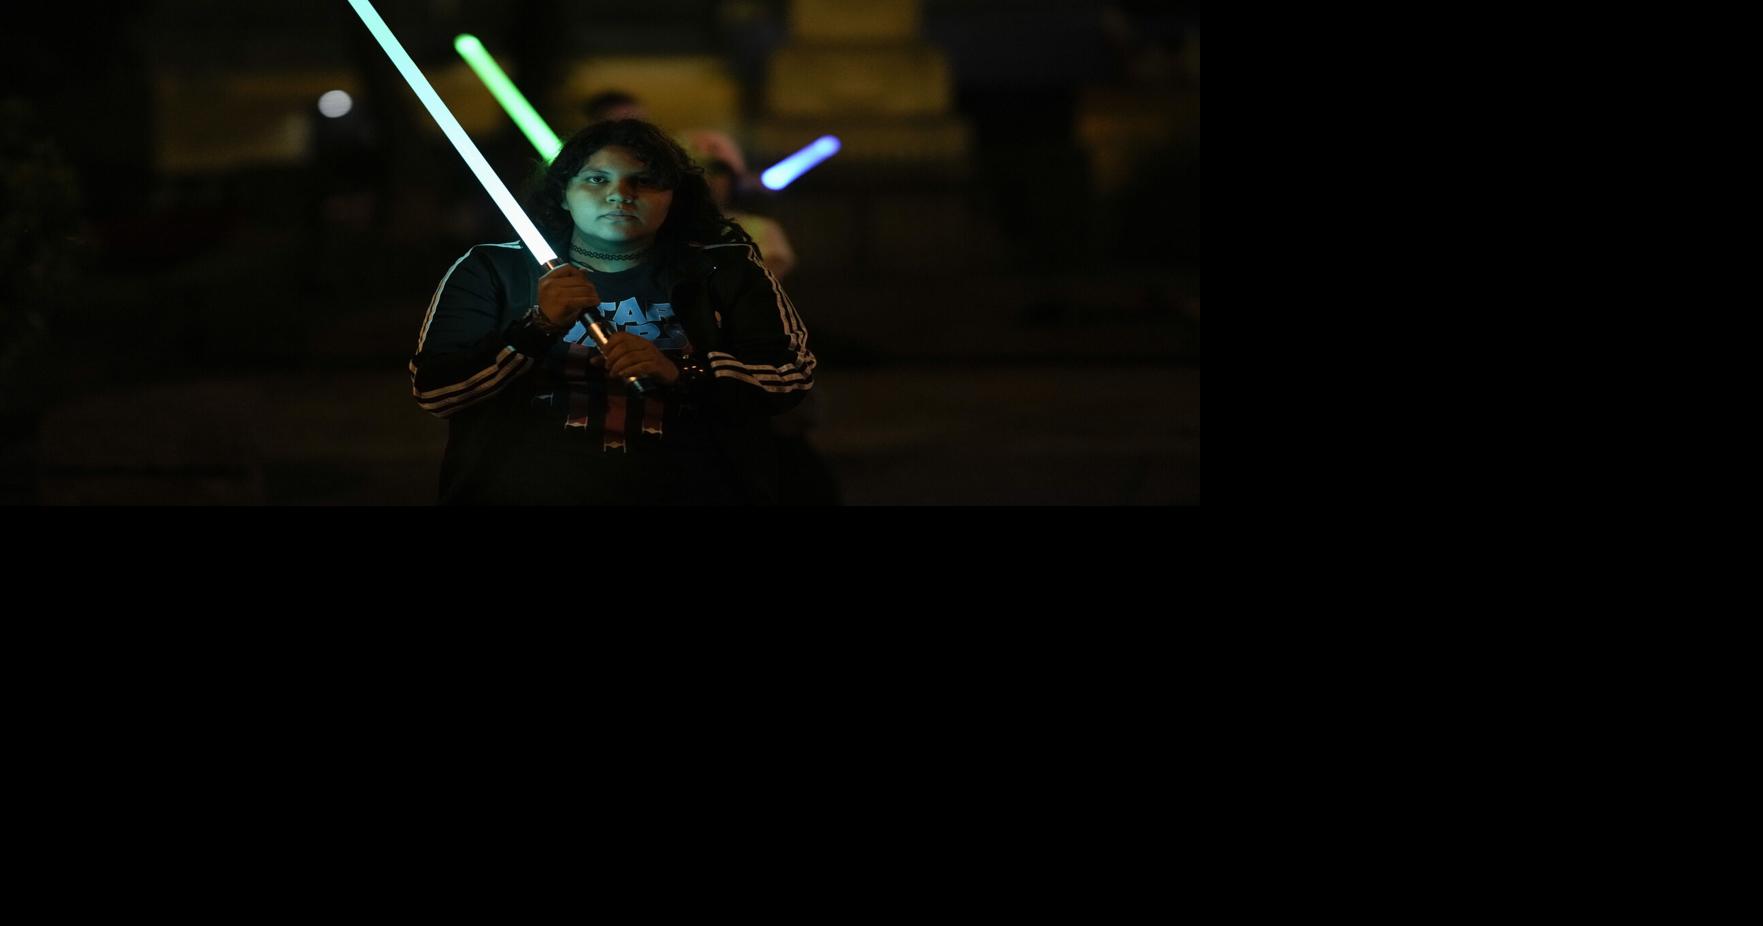 Fanáticos de Star Wars perfeccionan sus habilidades en duelos con sables de luz en una academia Jedi en Ciudad de México |  Entretenimiento